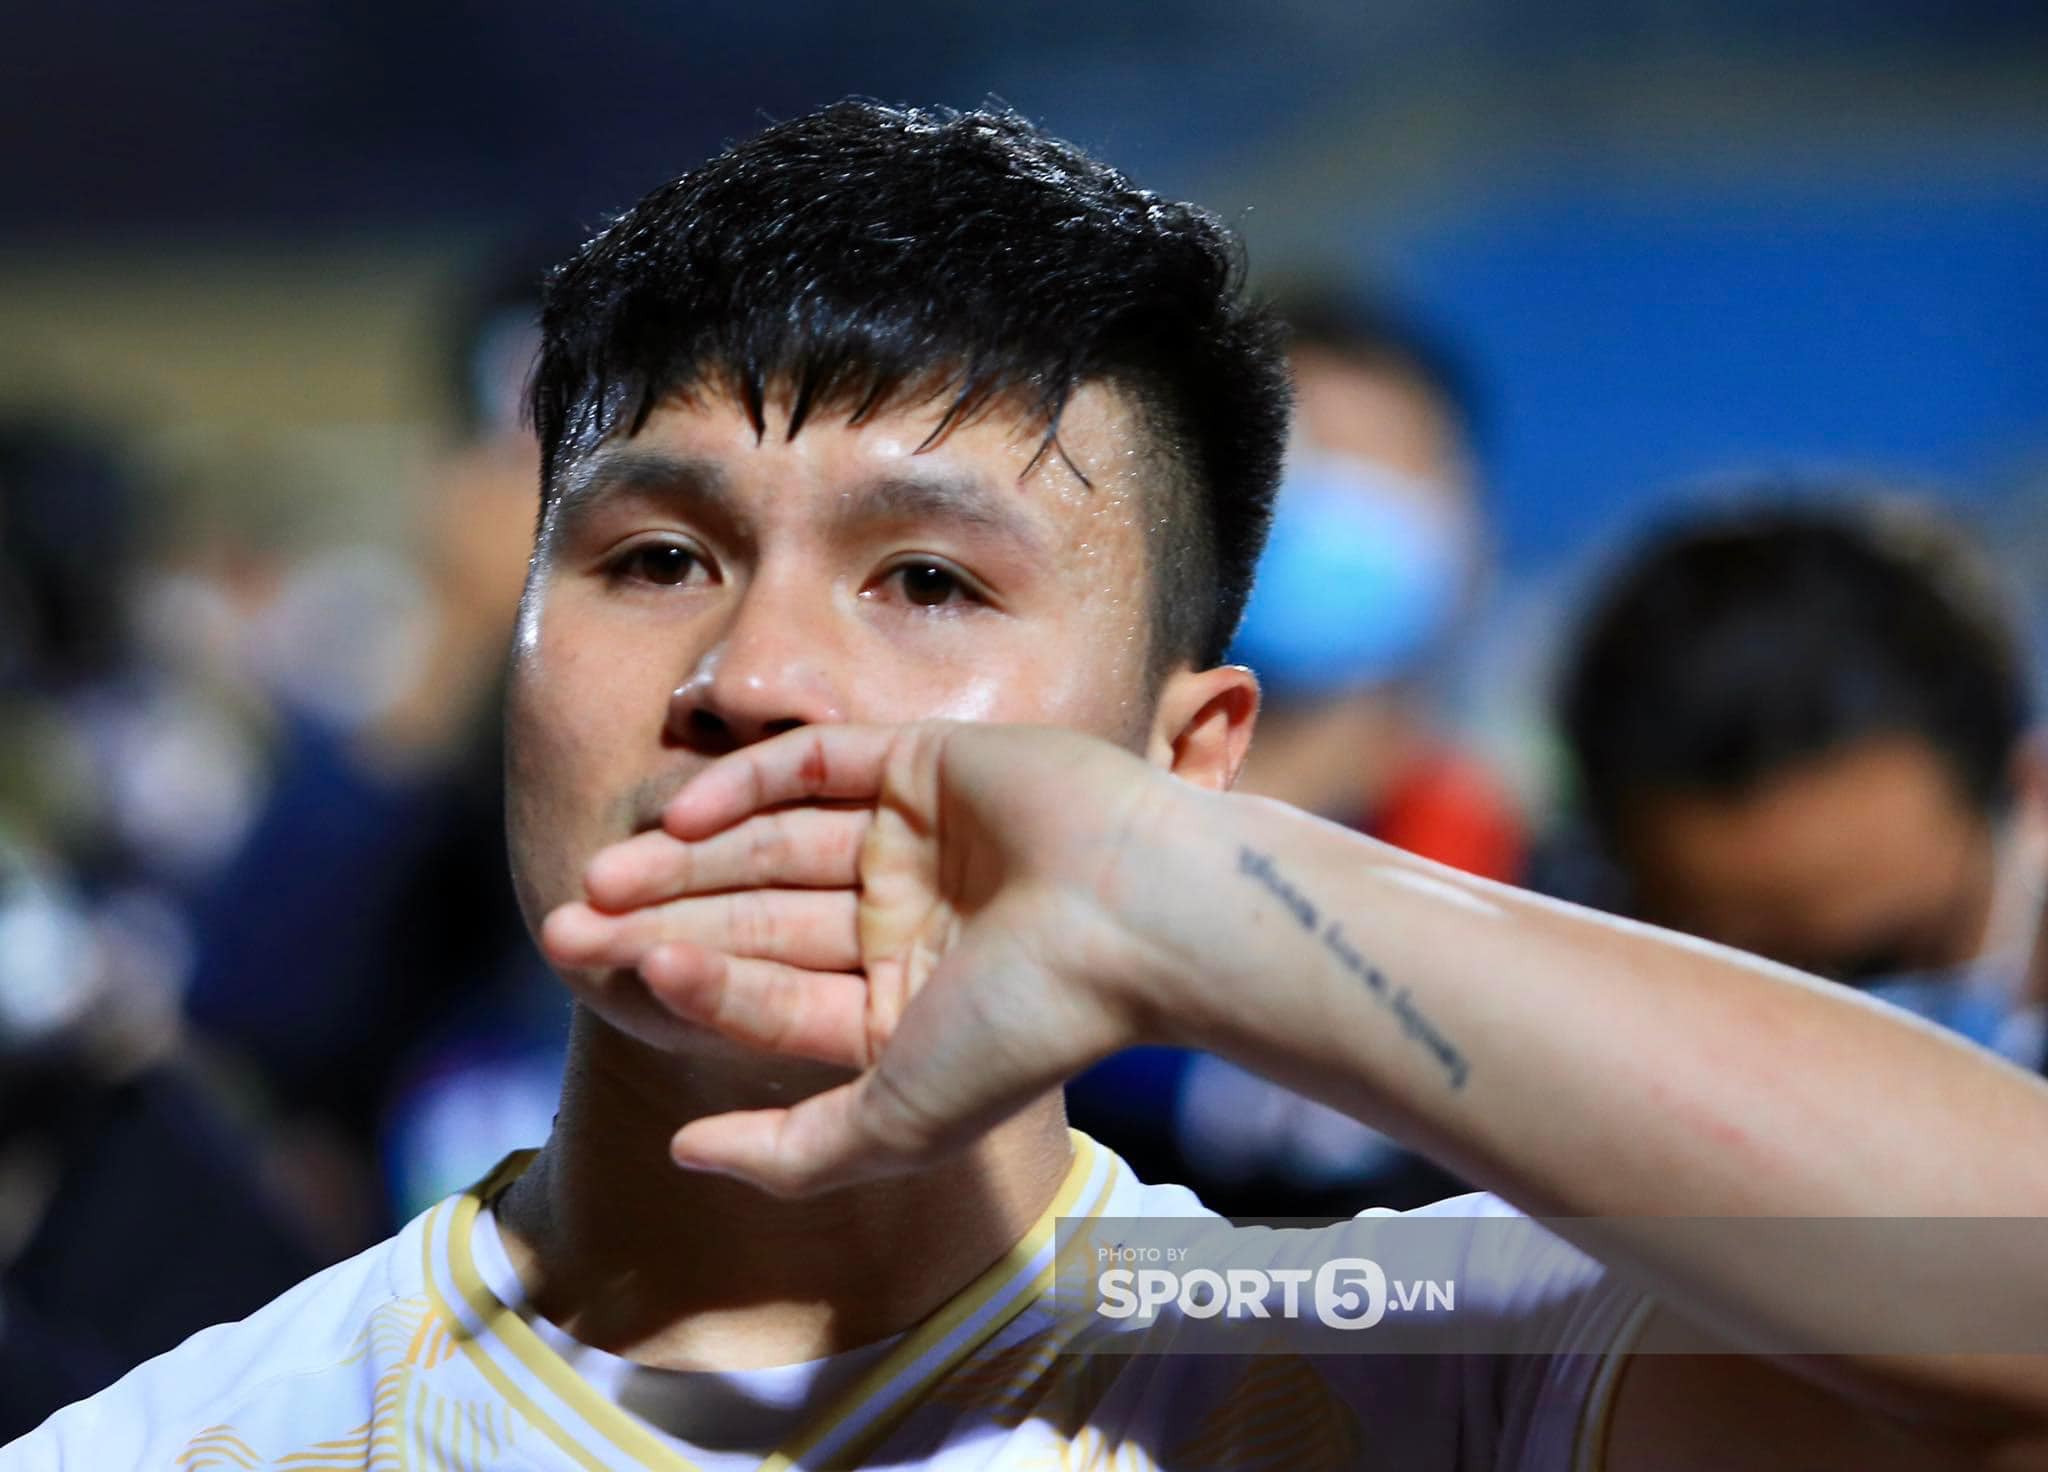 Cầu thủ Quang Hải xúc động sau trận bóng cuối cùng tại V.League, trước khi xuất ngoại sang trời Âu